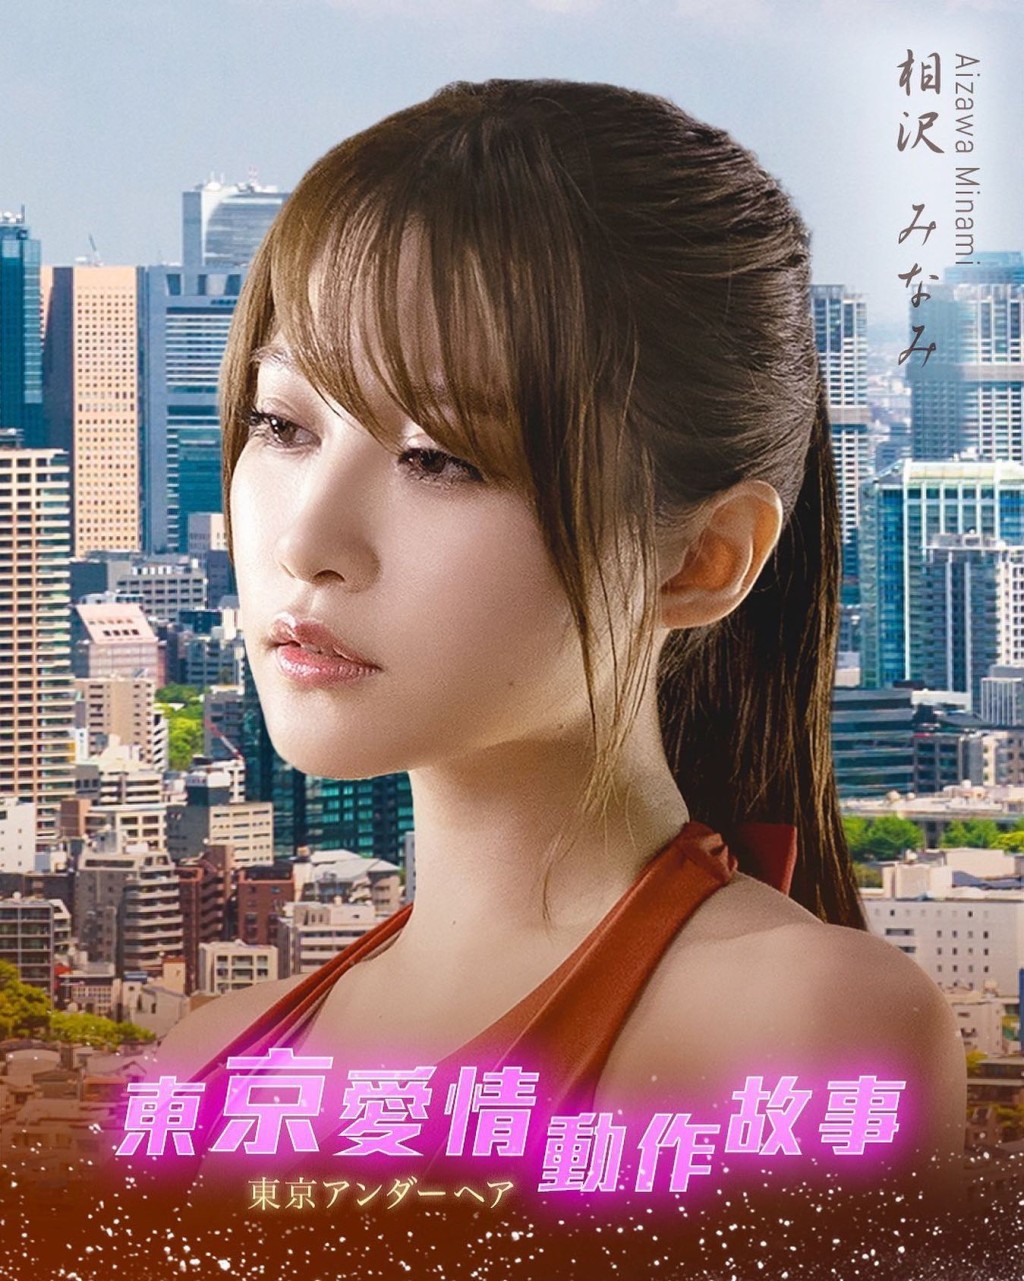 相泽南有新作在香港播出。